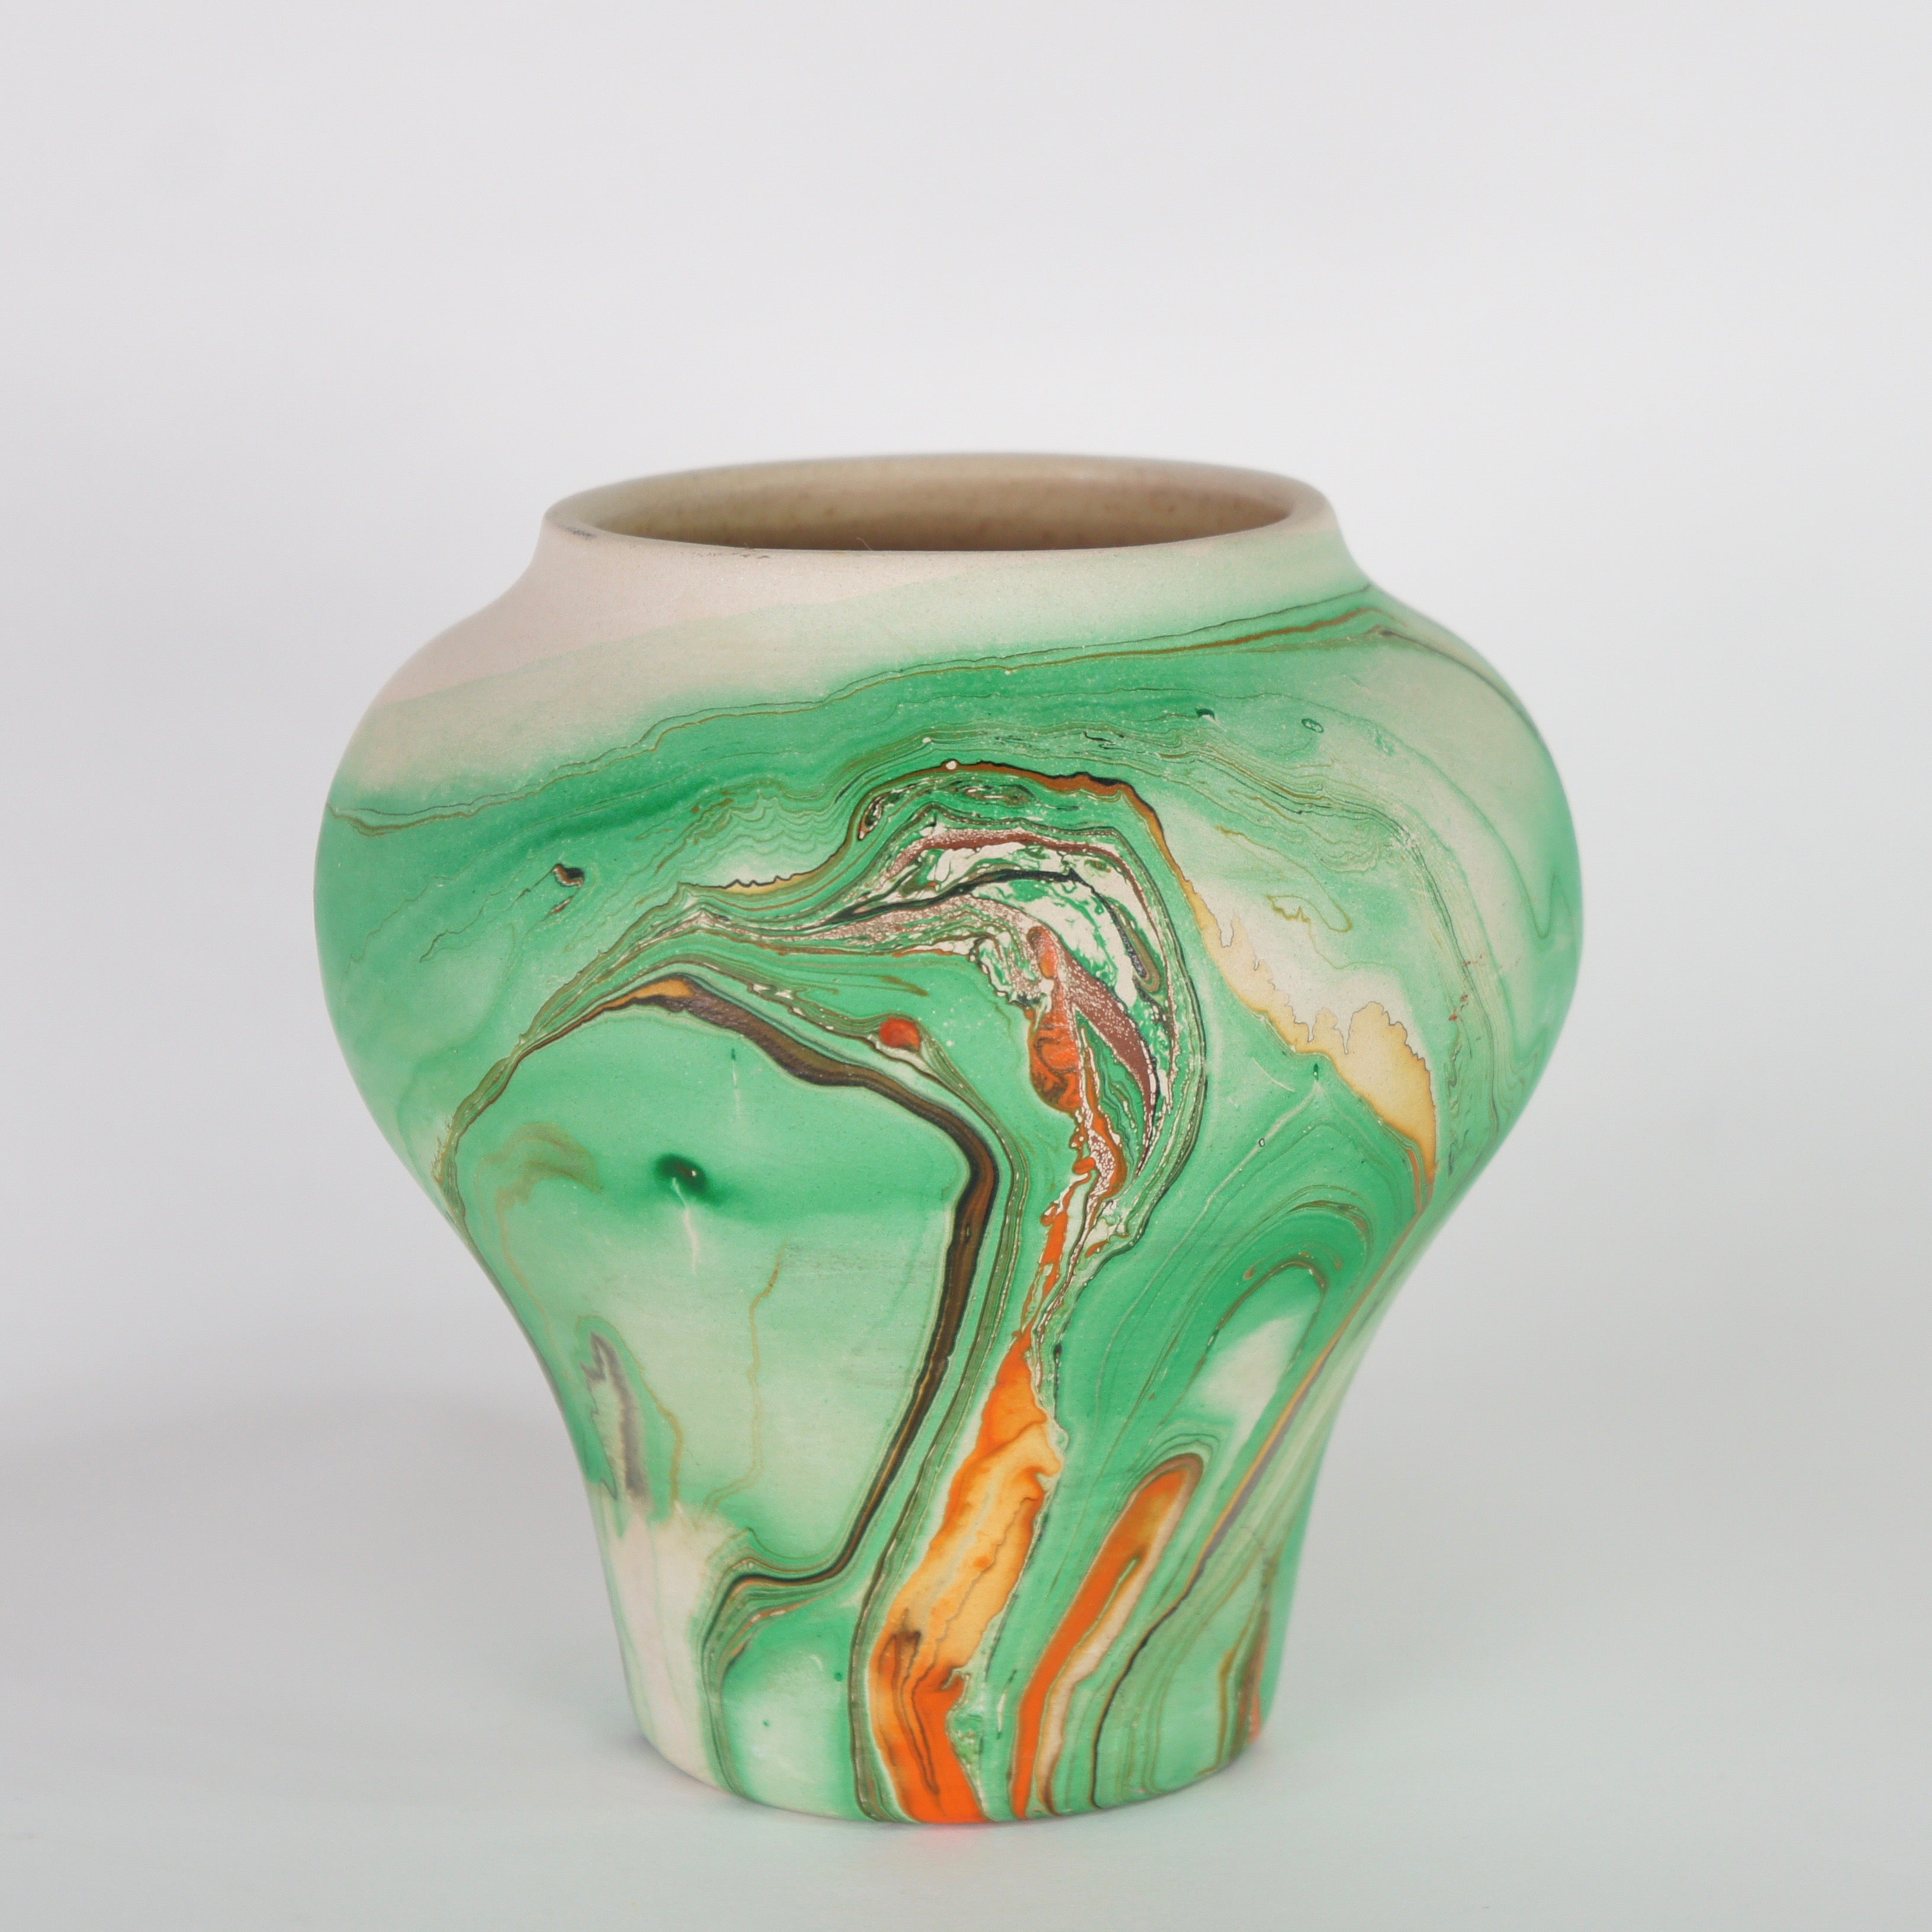 純正売れ筋 ヴィンテージ 14cm 花瓶 ネマジnemadji pottery ビンテージ 